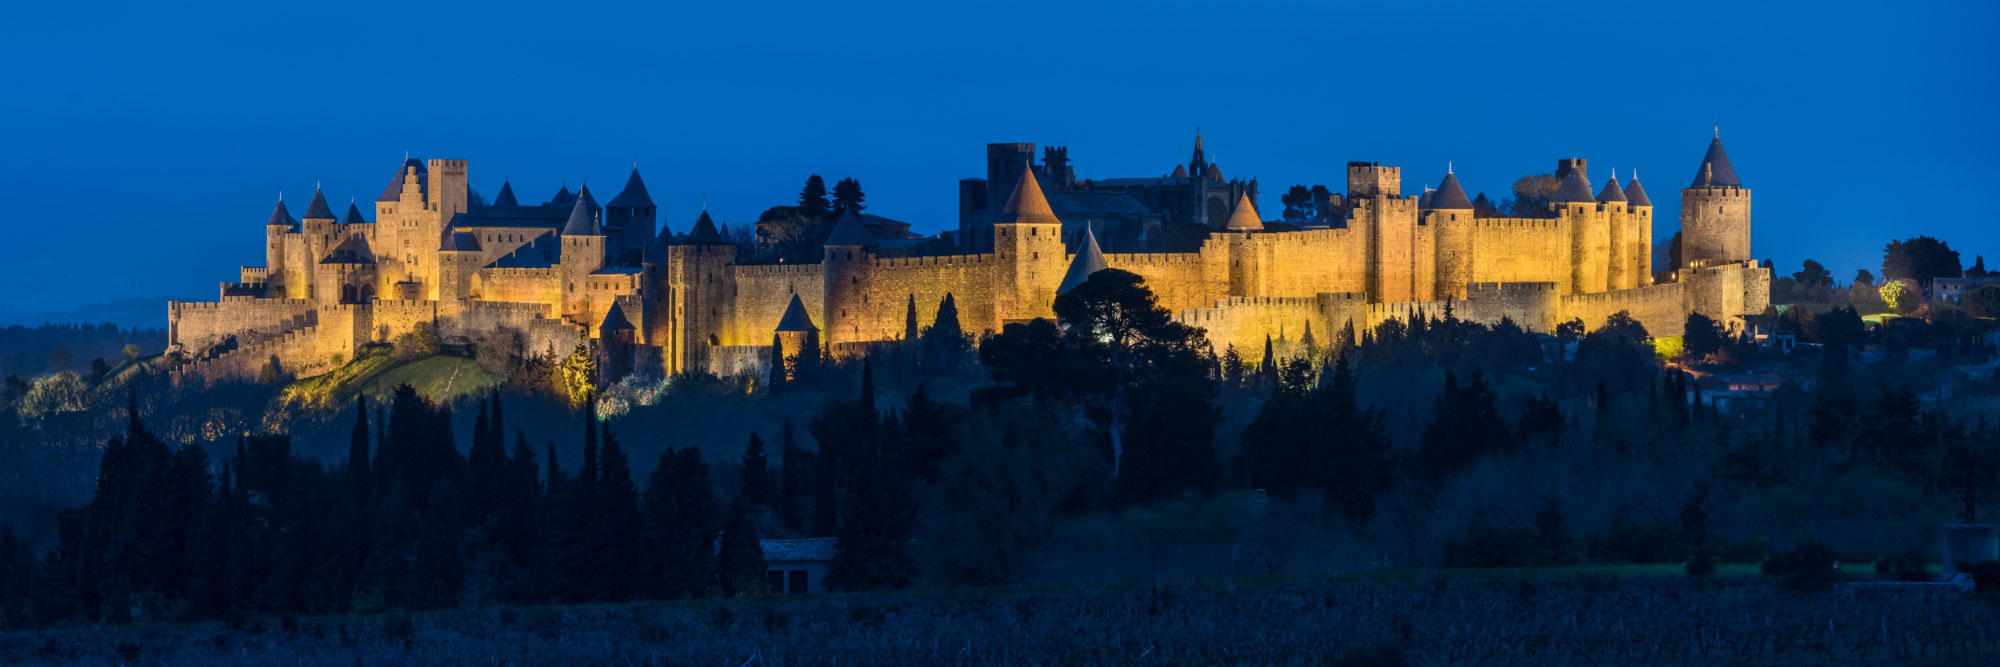 Cité de carcassonne, à la tombée de la nuit